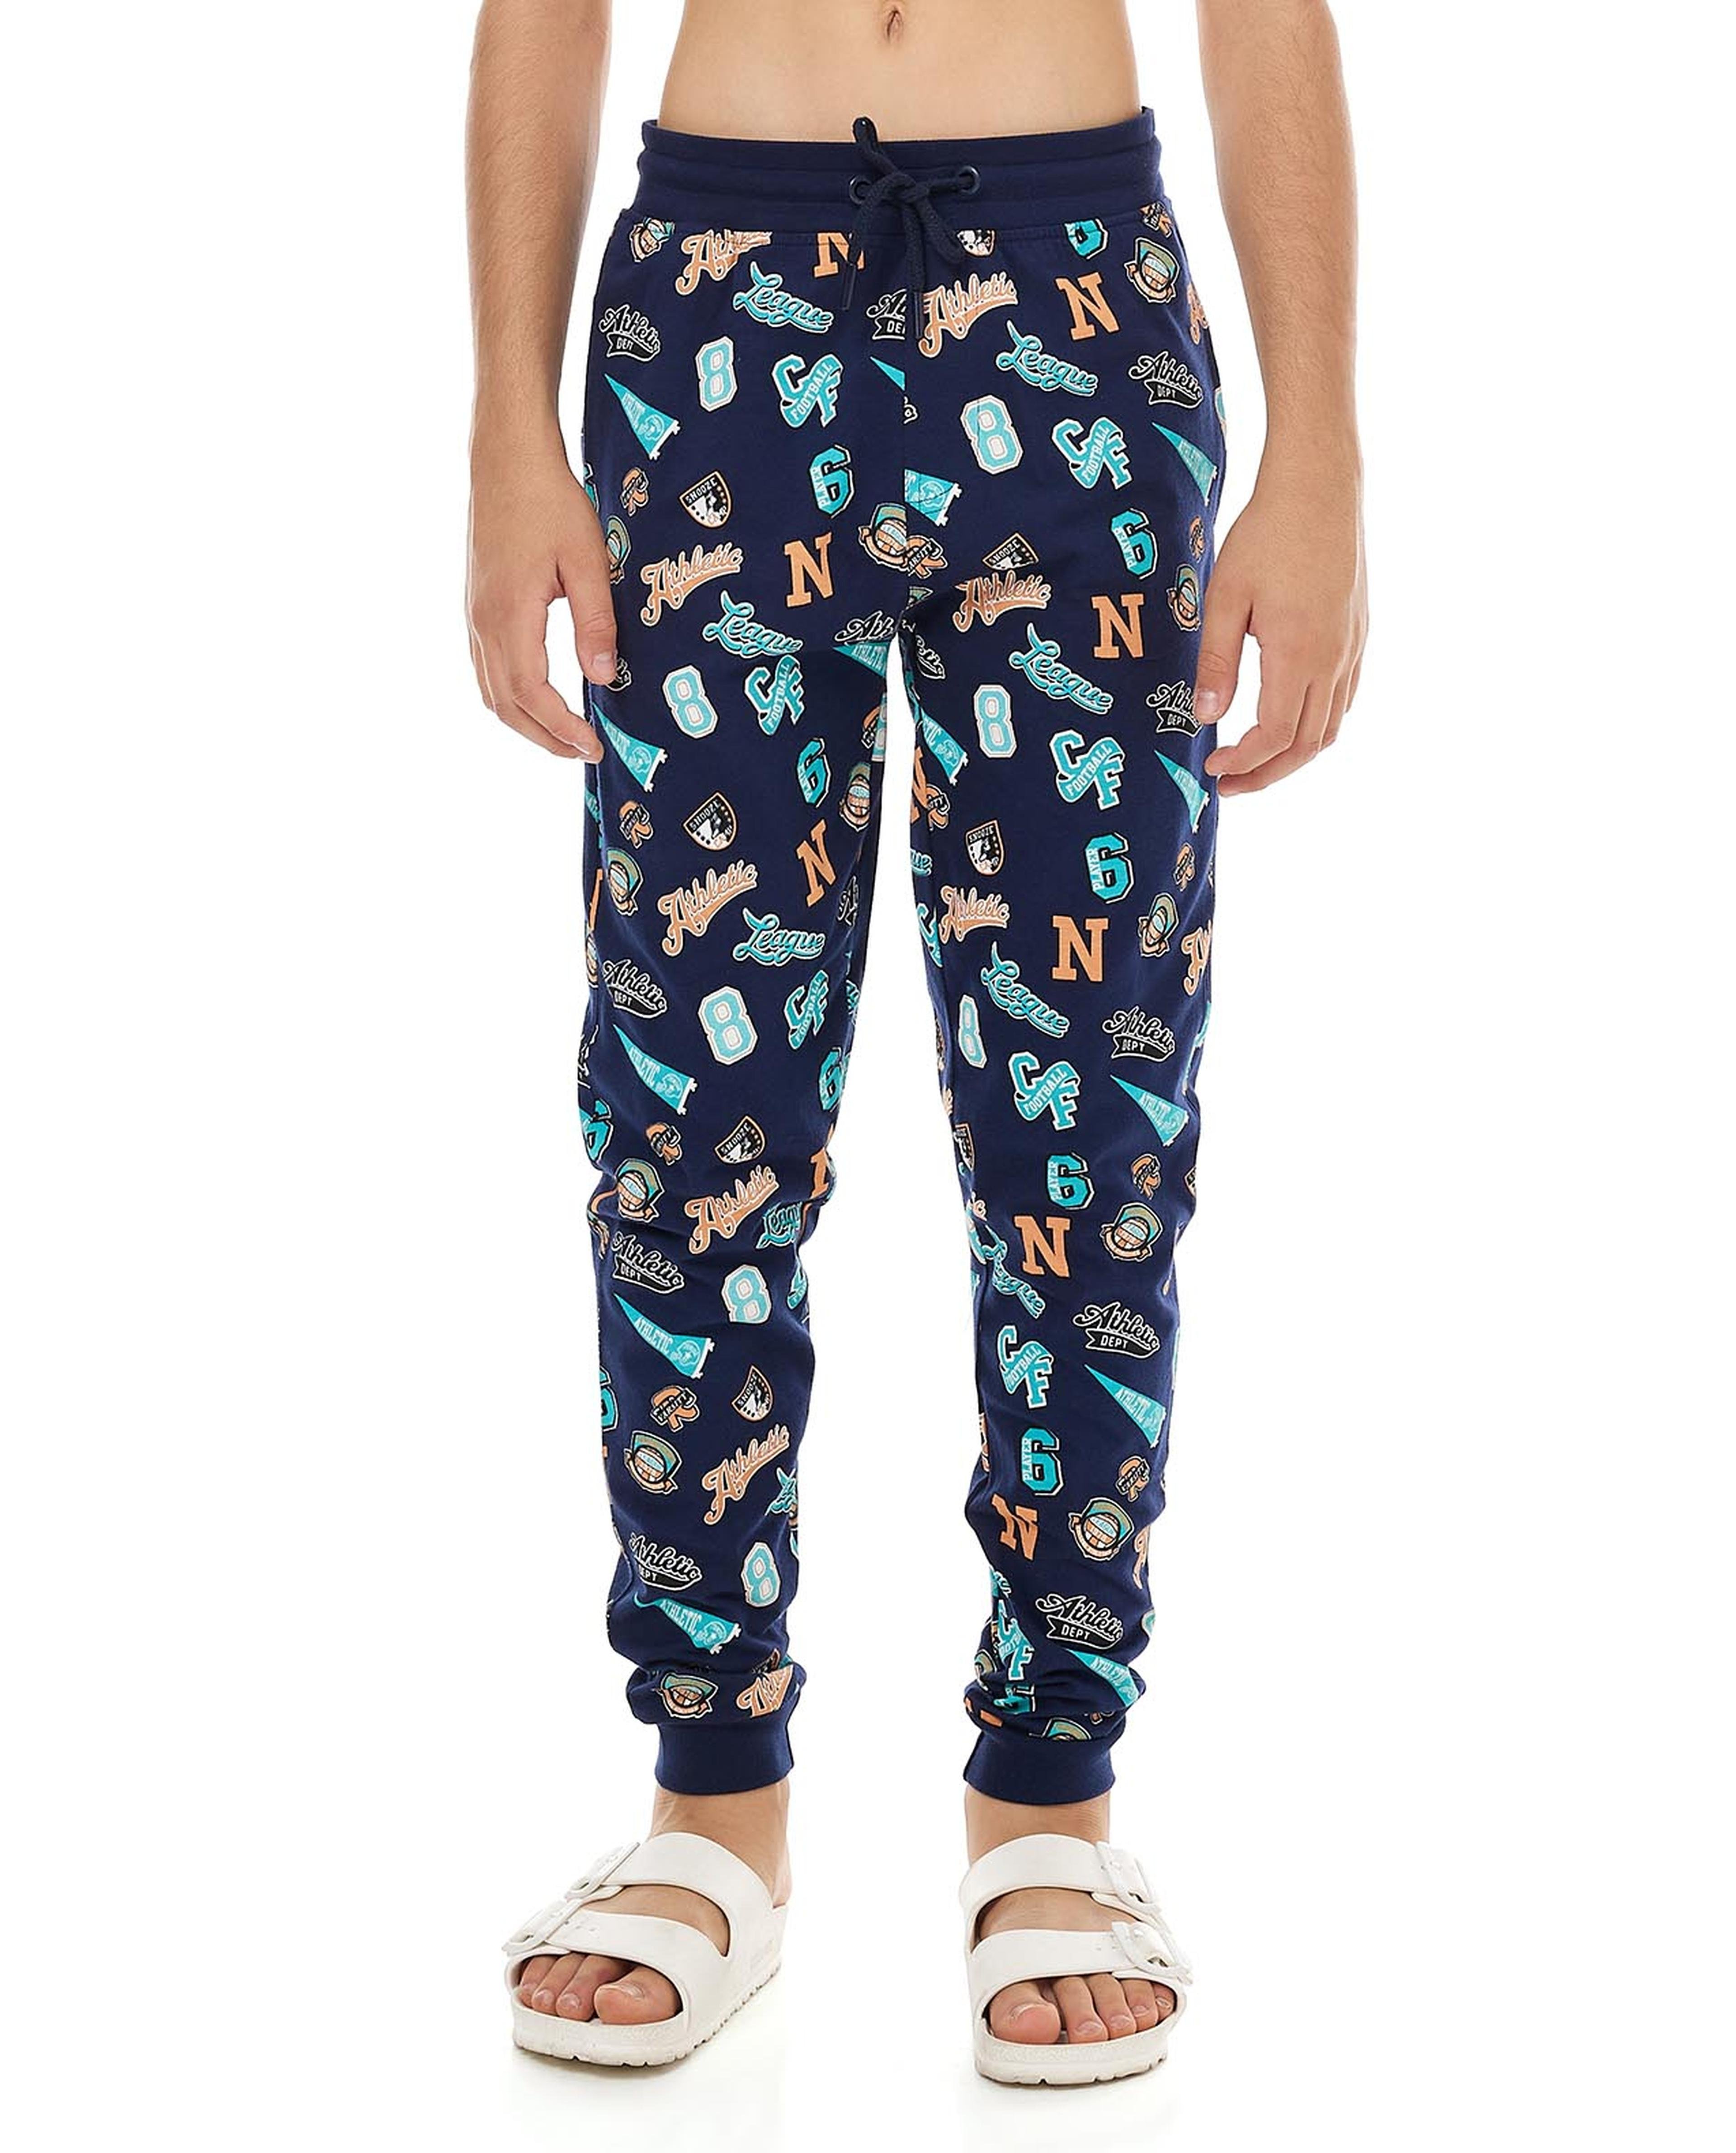 All Over Printed Pyjama Set